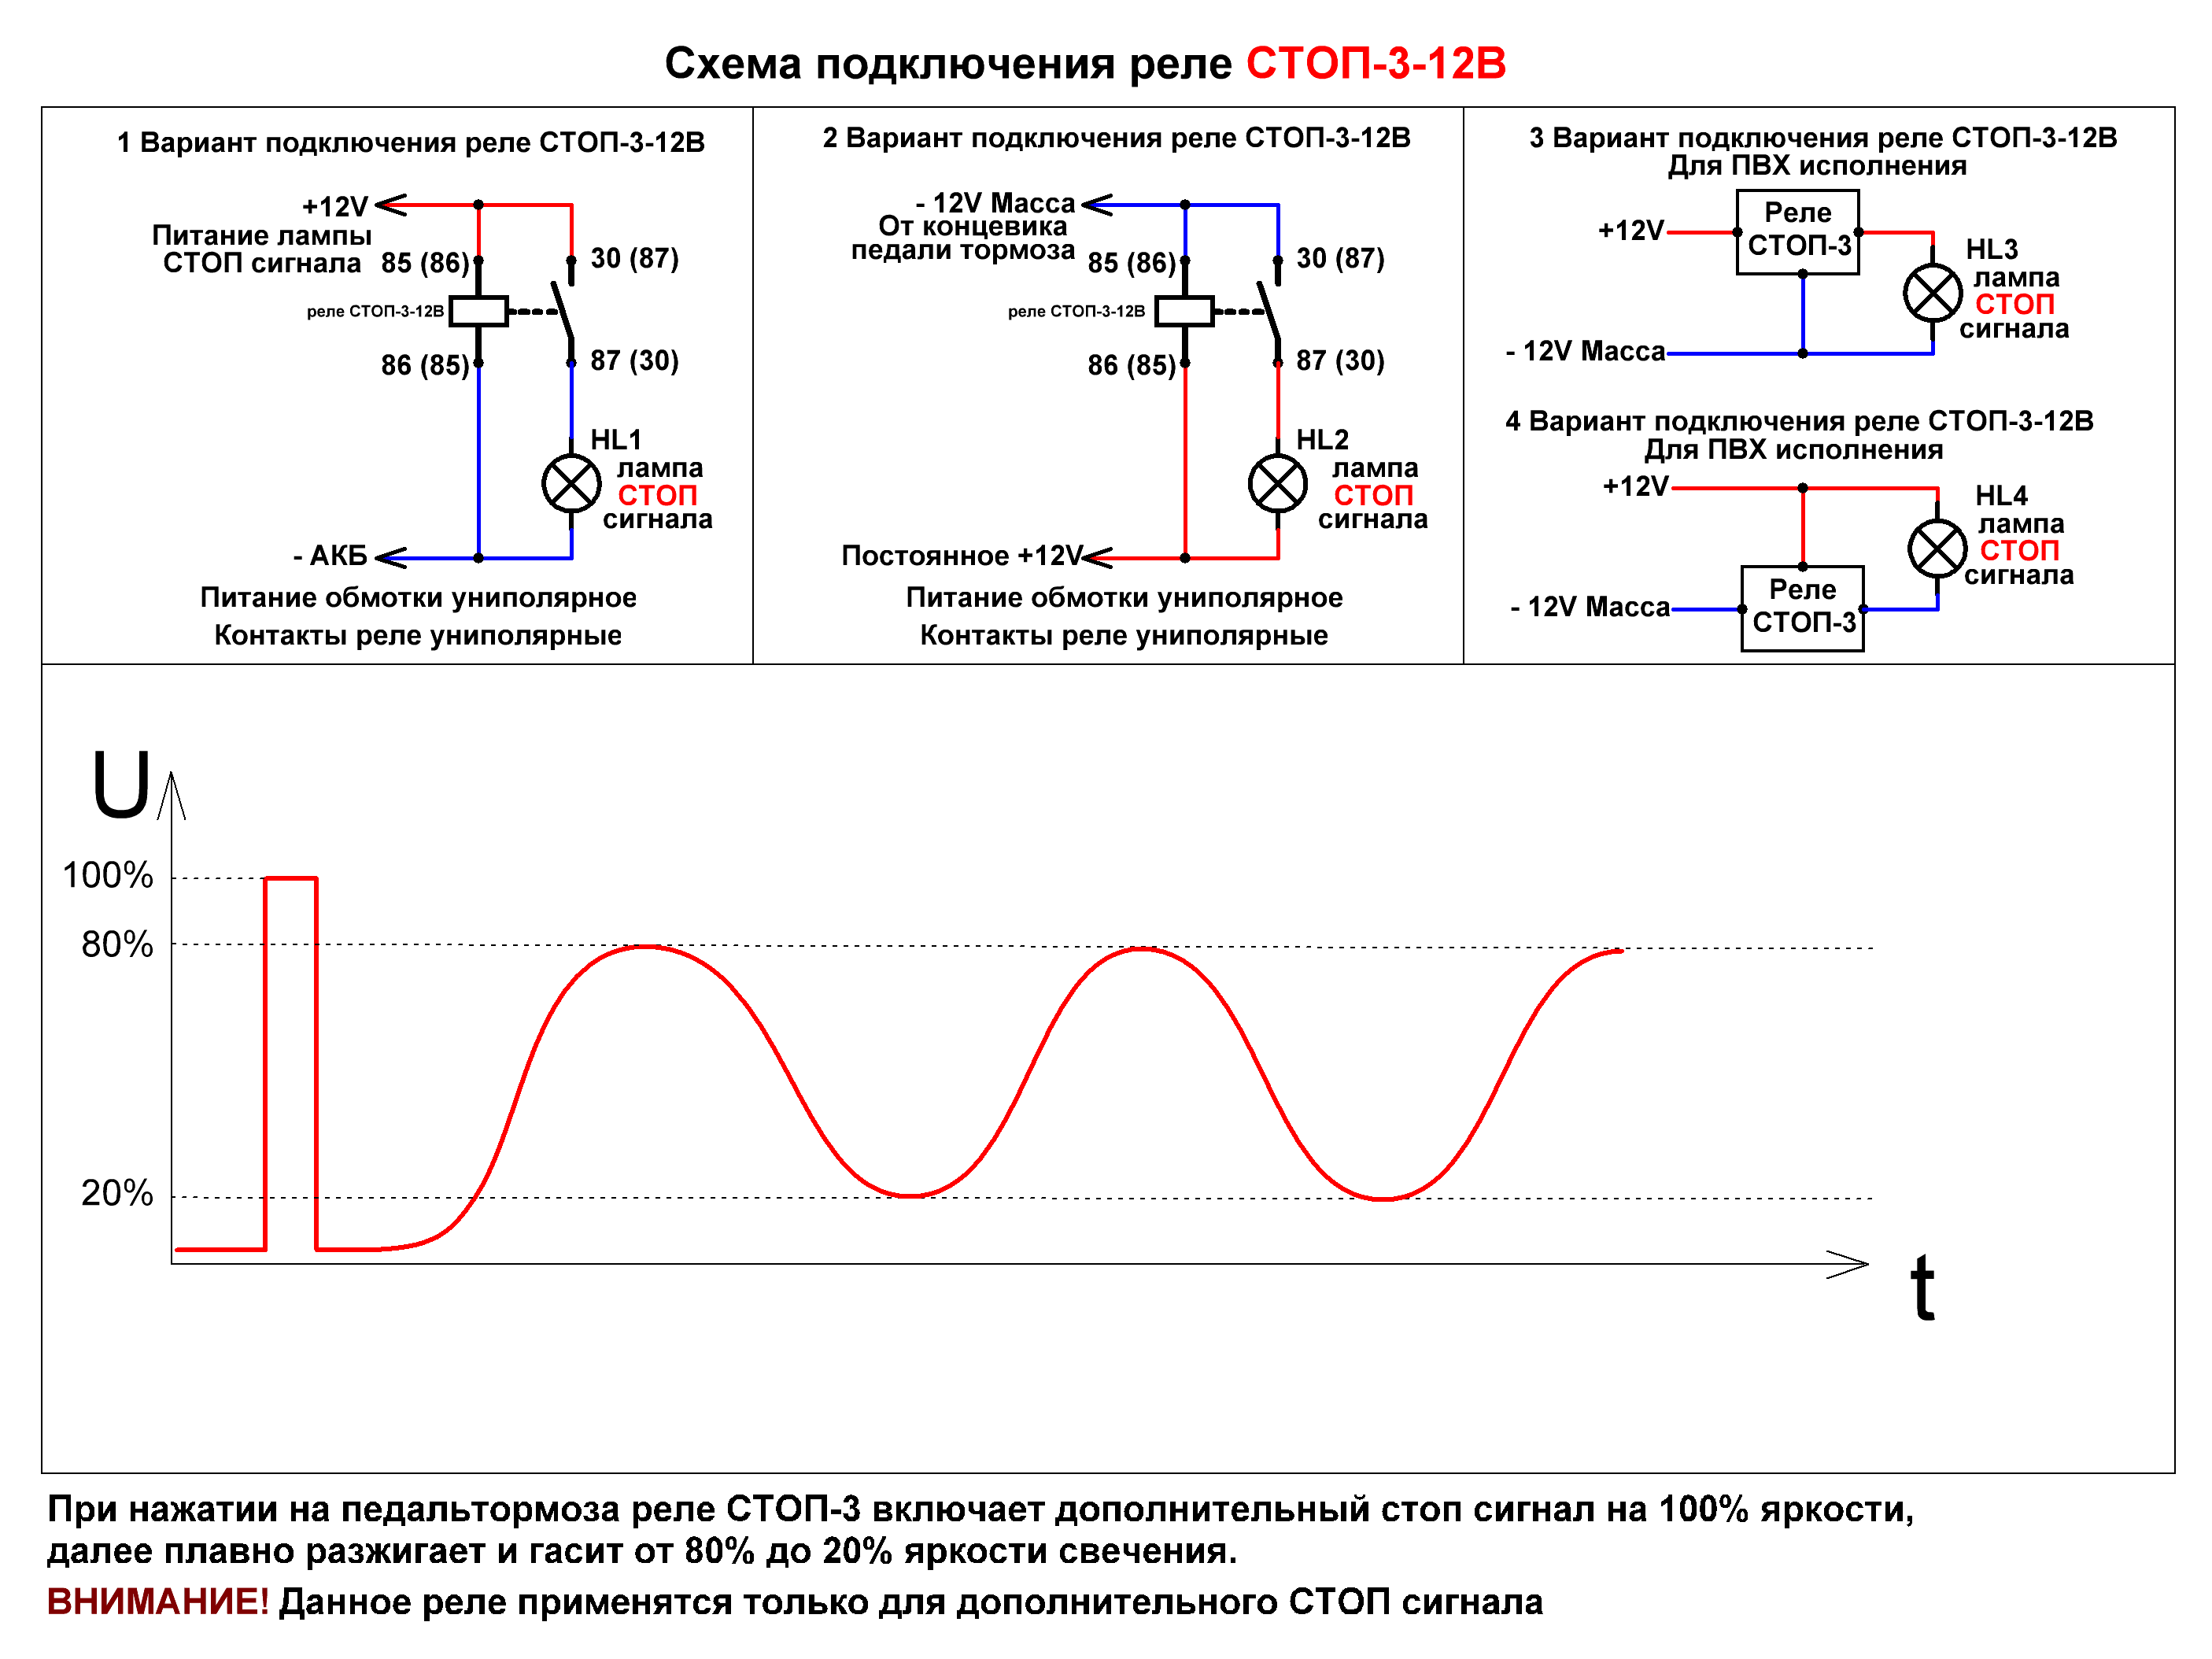 Общая схема подключения реле СТОП-3-12В